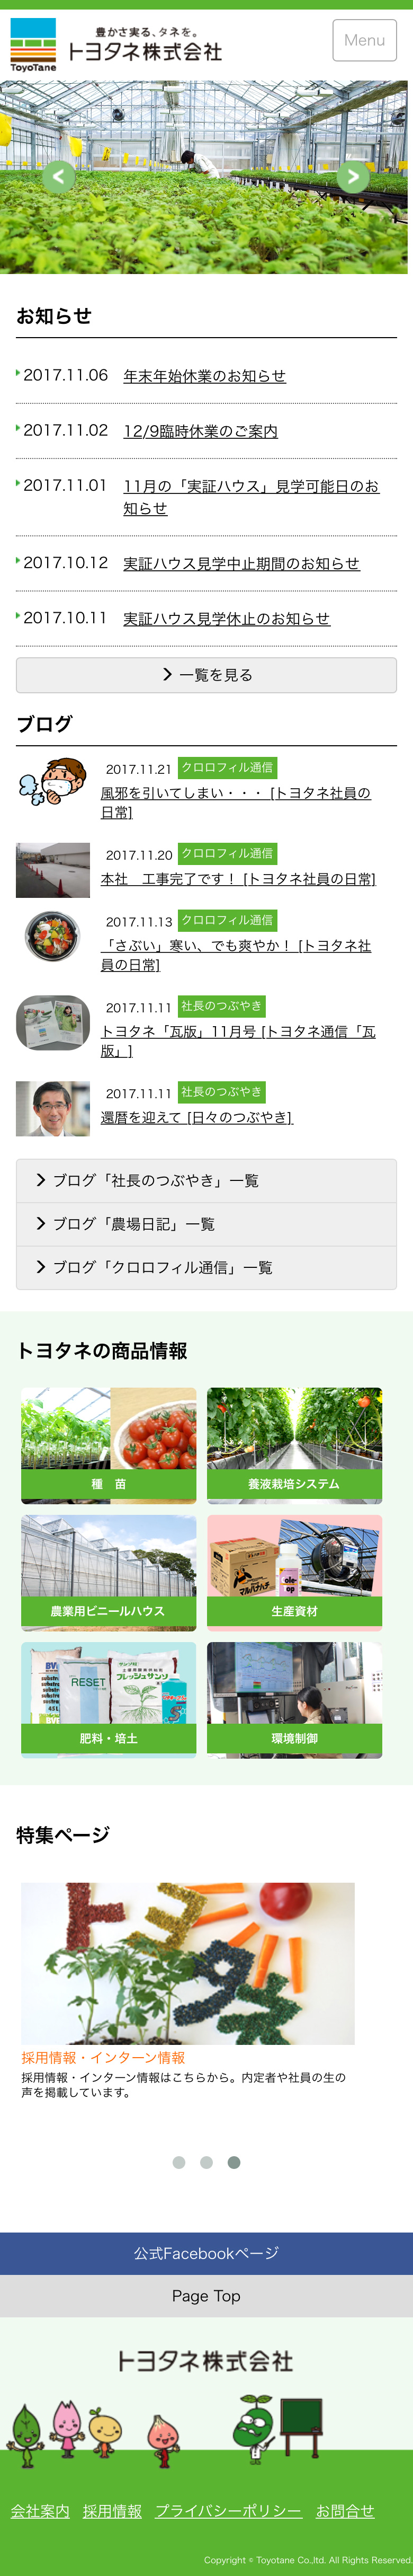 トヨタネ株式会社様サイトスマートフォン表示トップページ